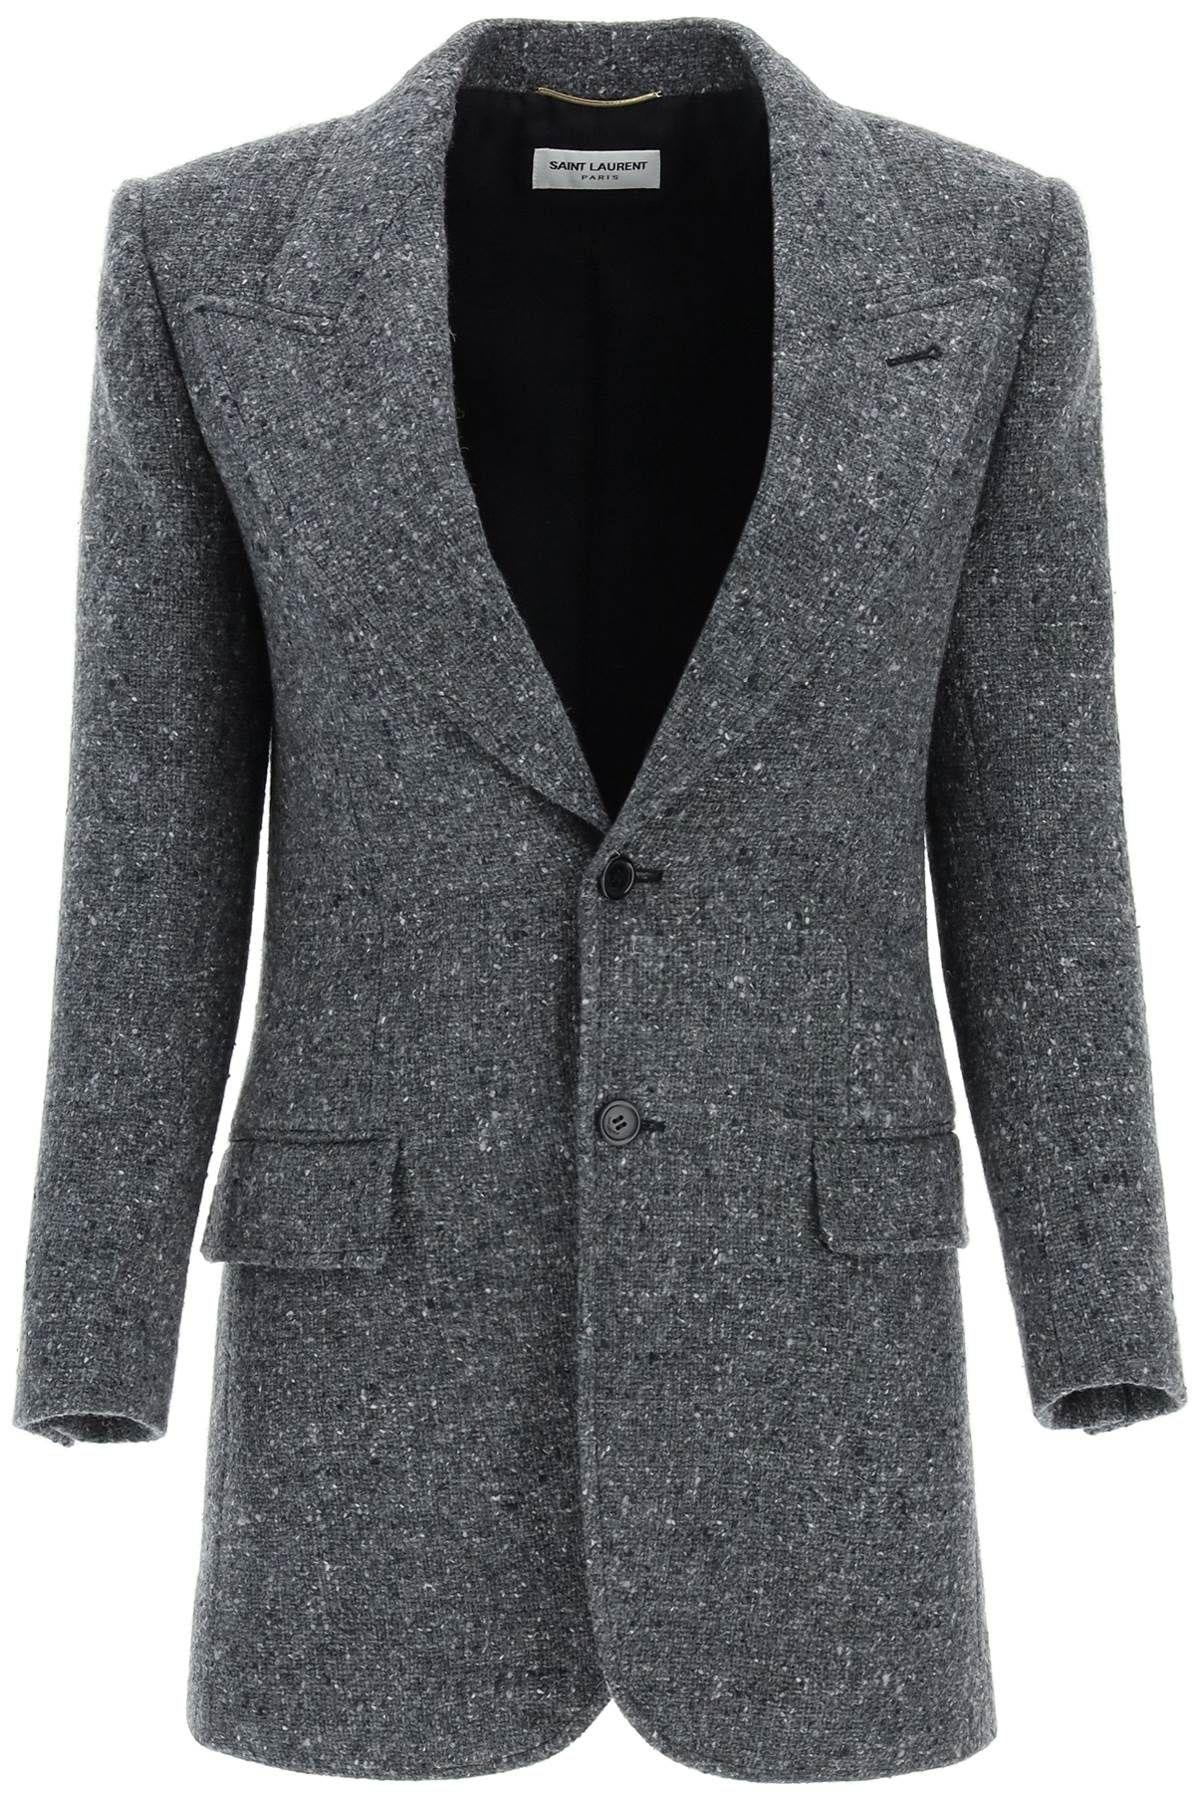 Saint Laurent Tweed Single-breasted Jacket